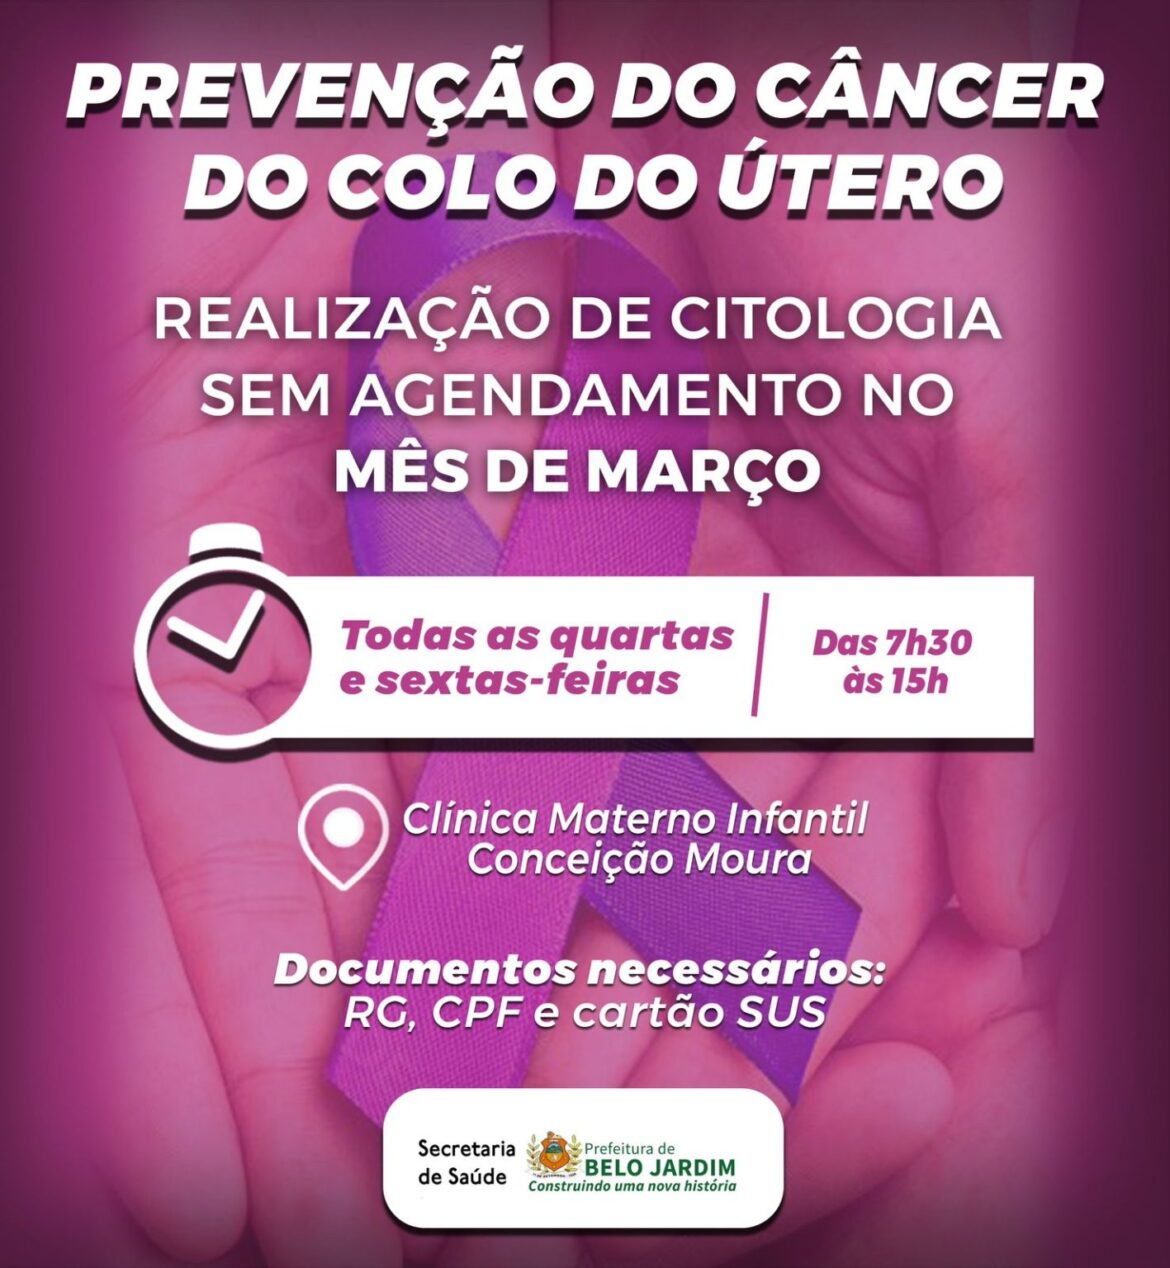 Prefeitura de BJ oferece citologia sem agendamento para prevenção do câncer do colo do útero